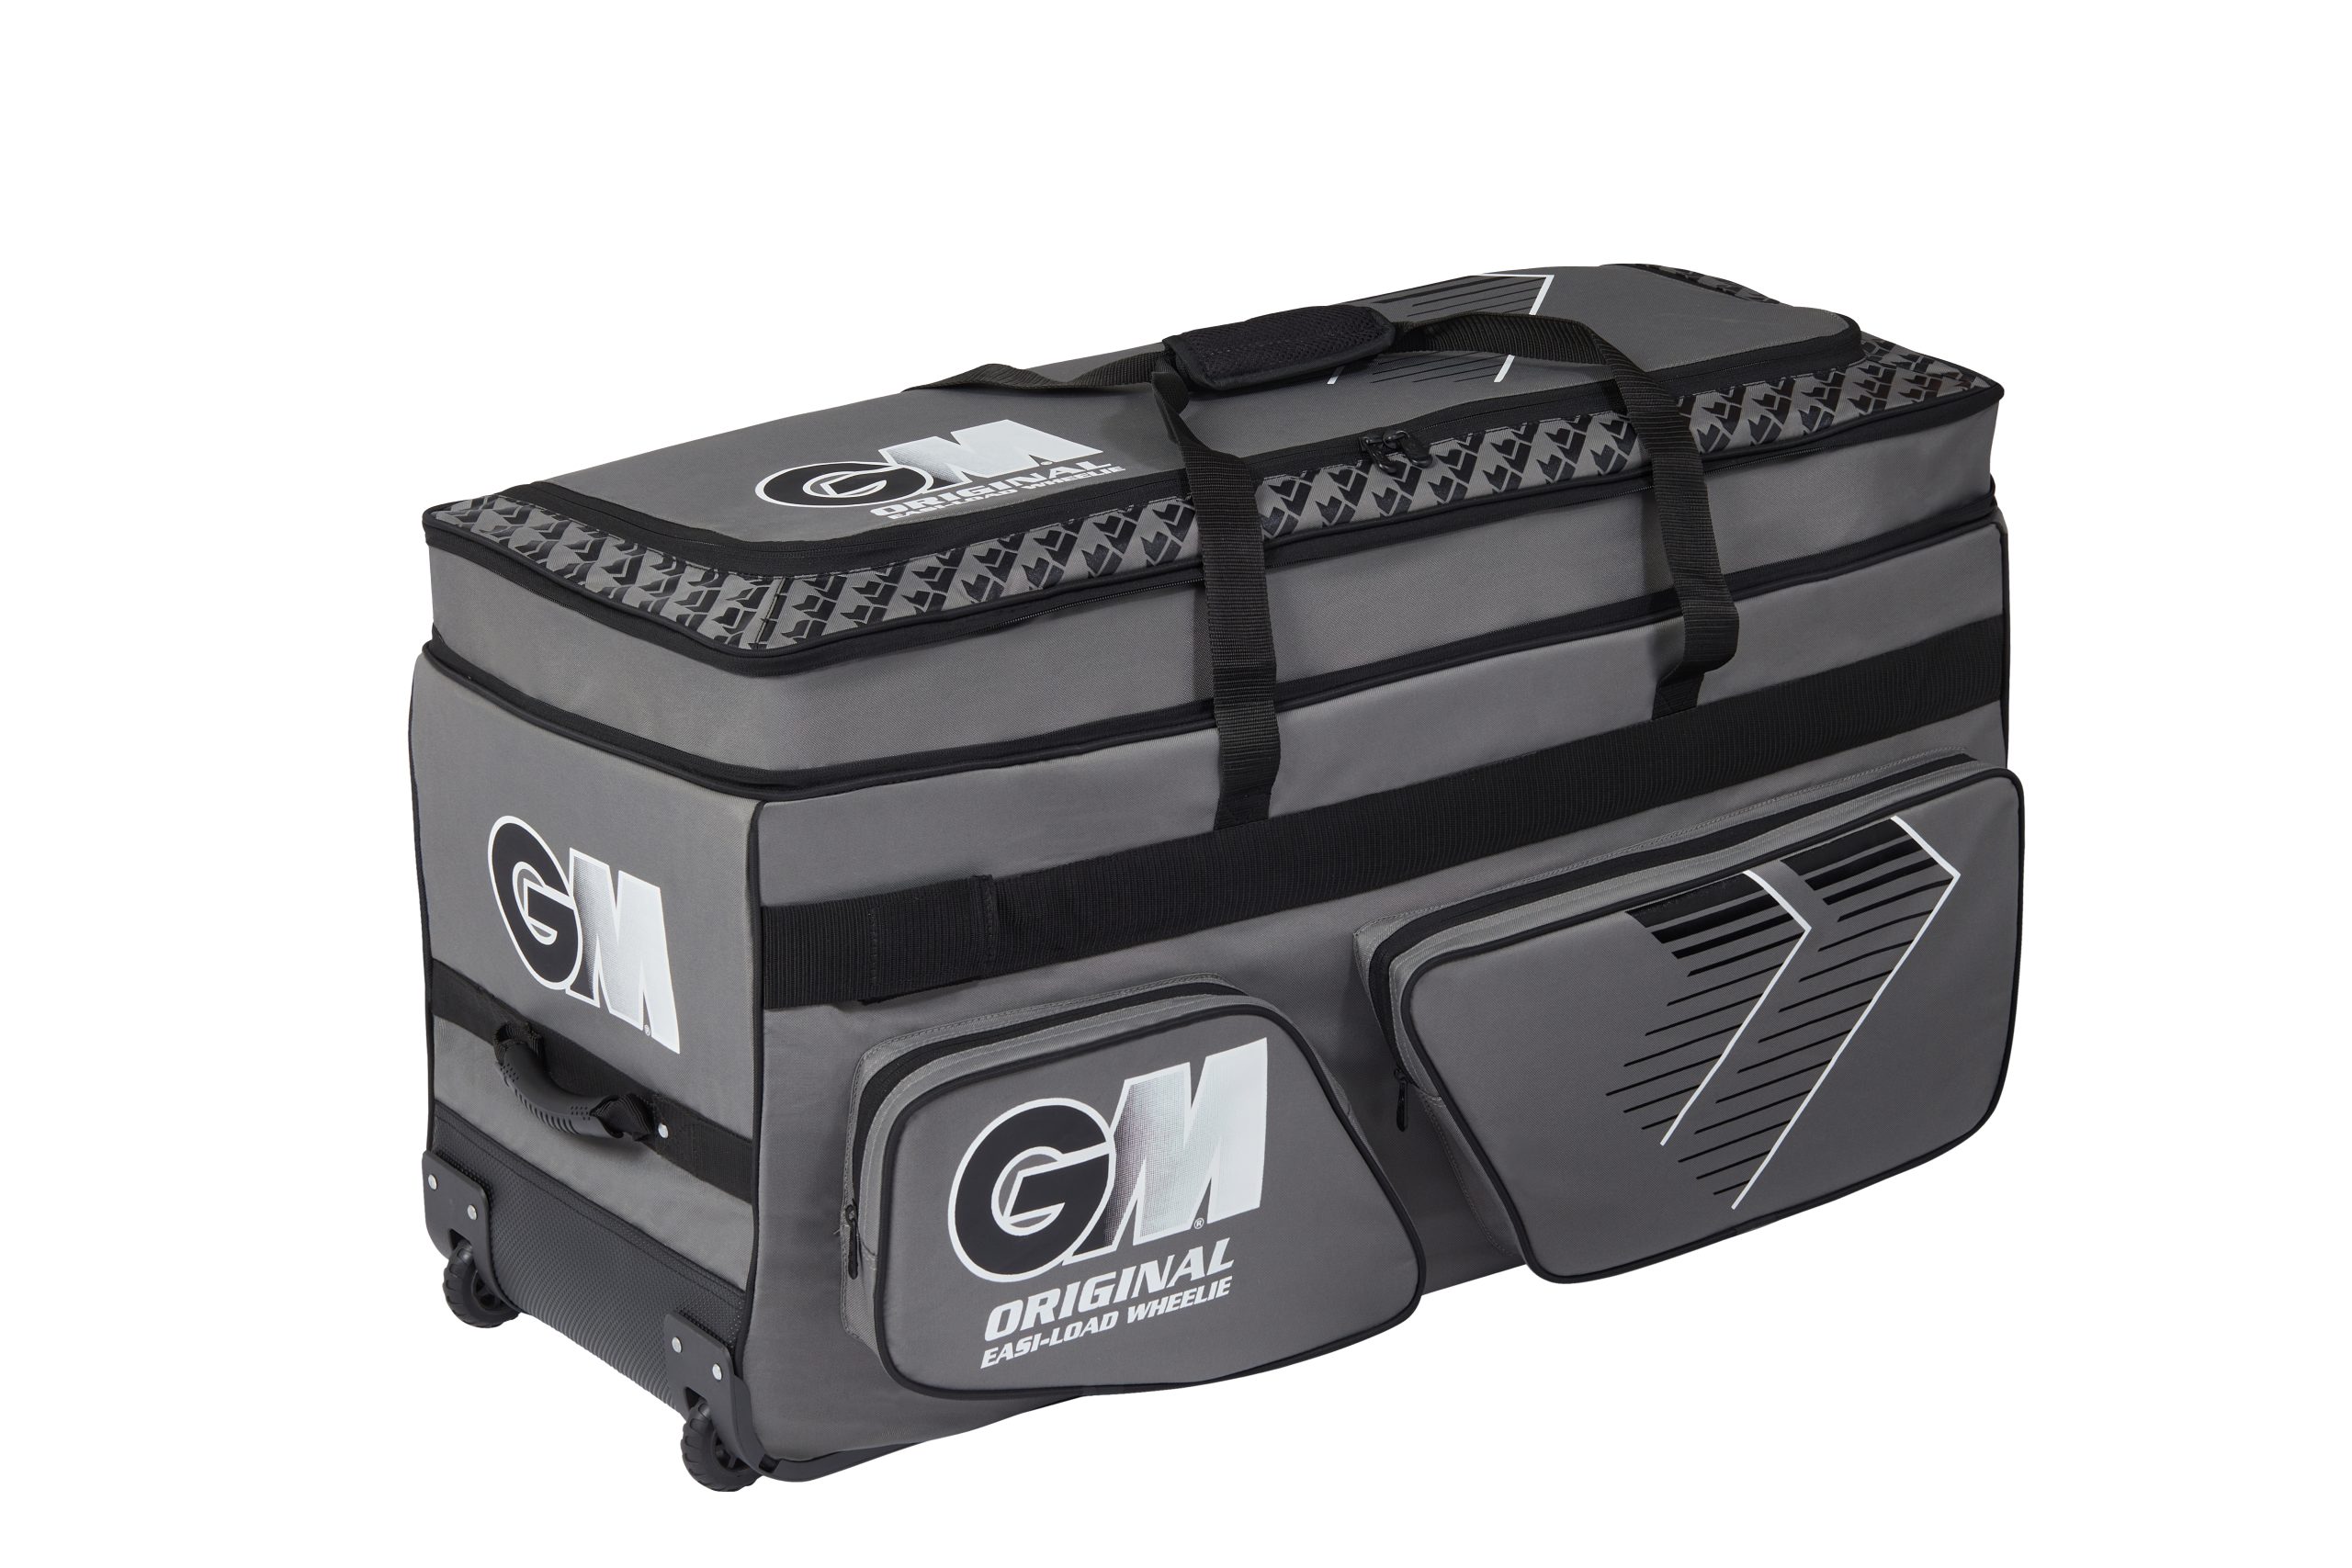 GM-Original-Easi-Load-Wheelie-Bag